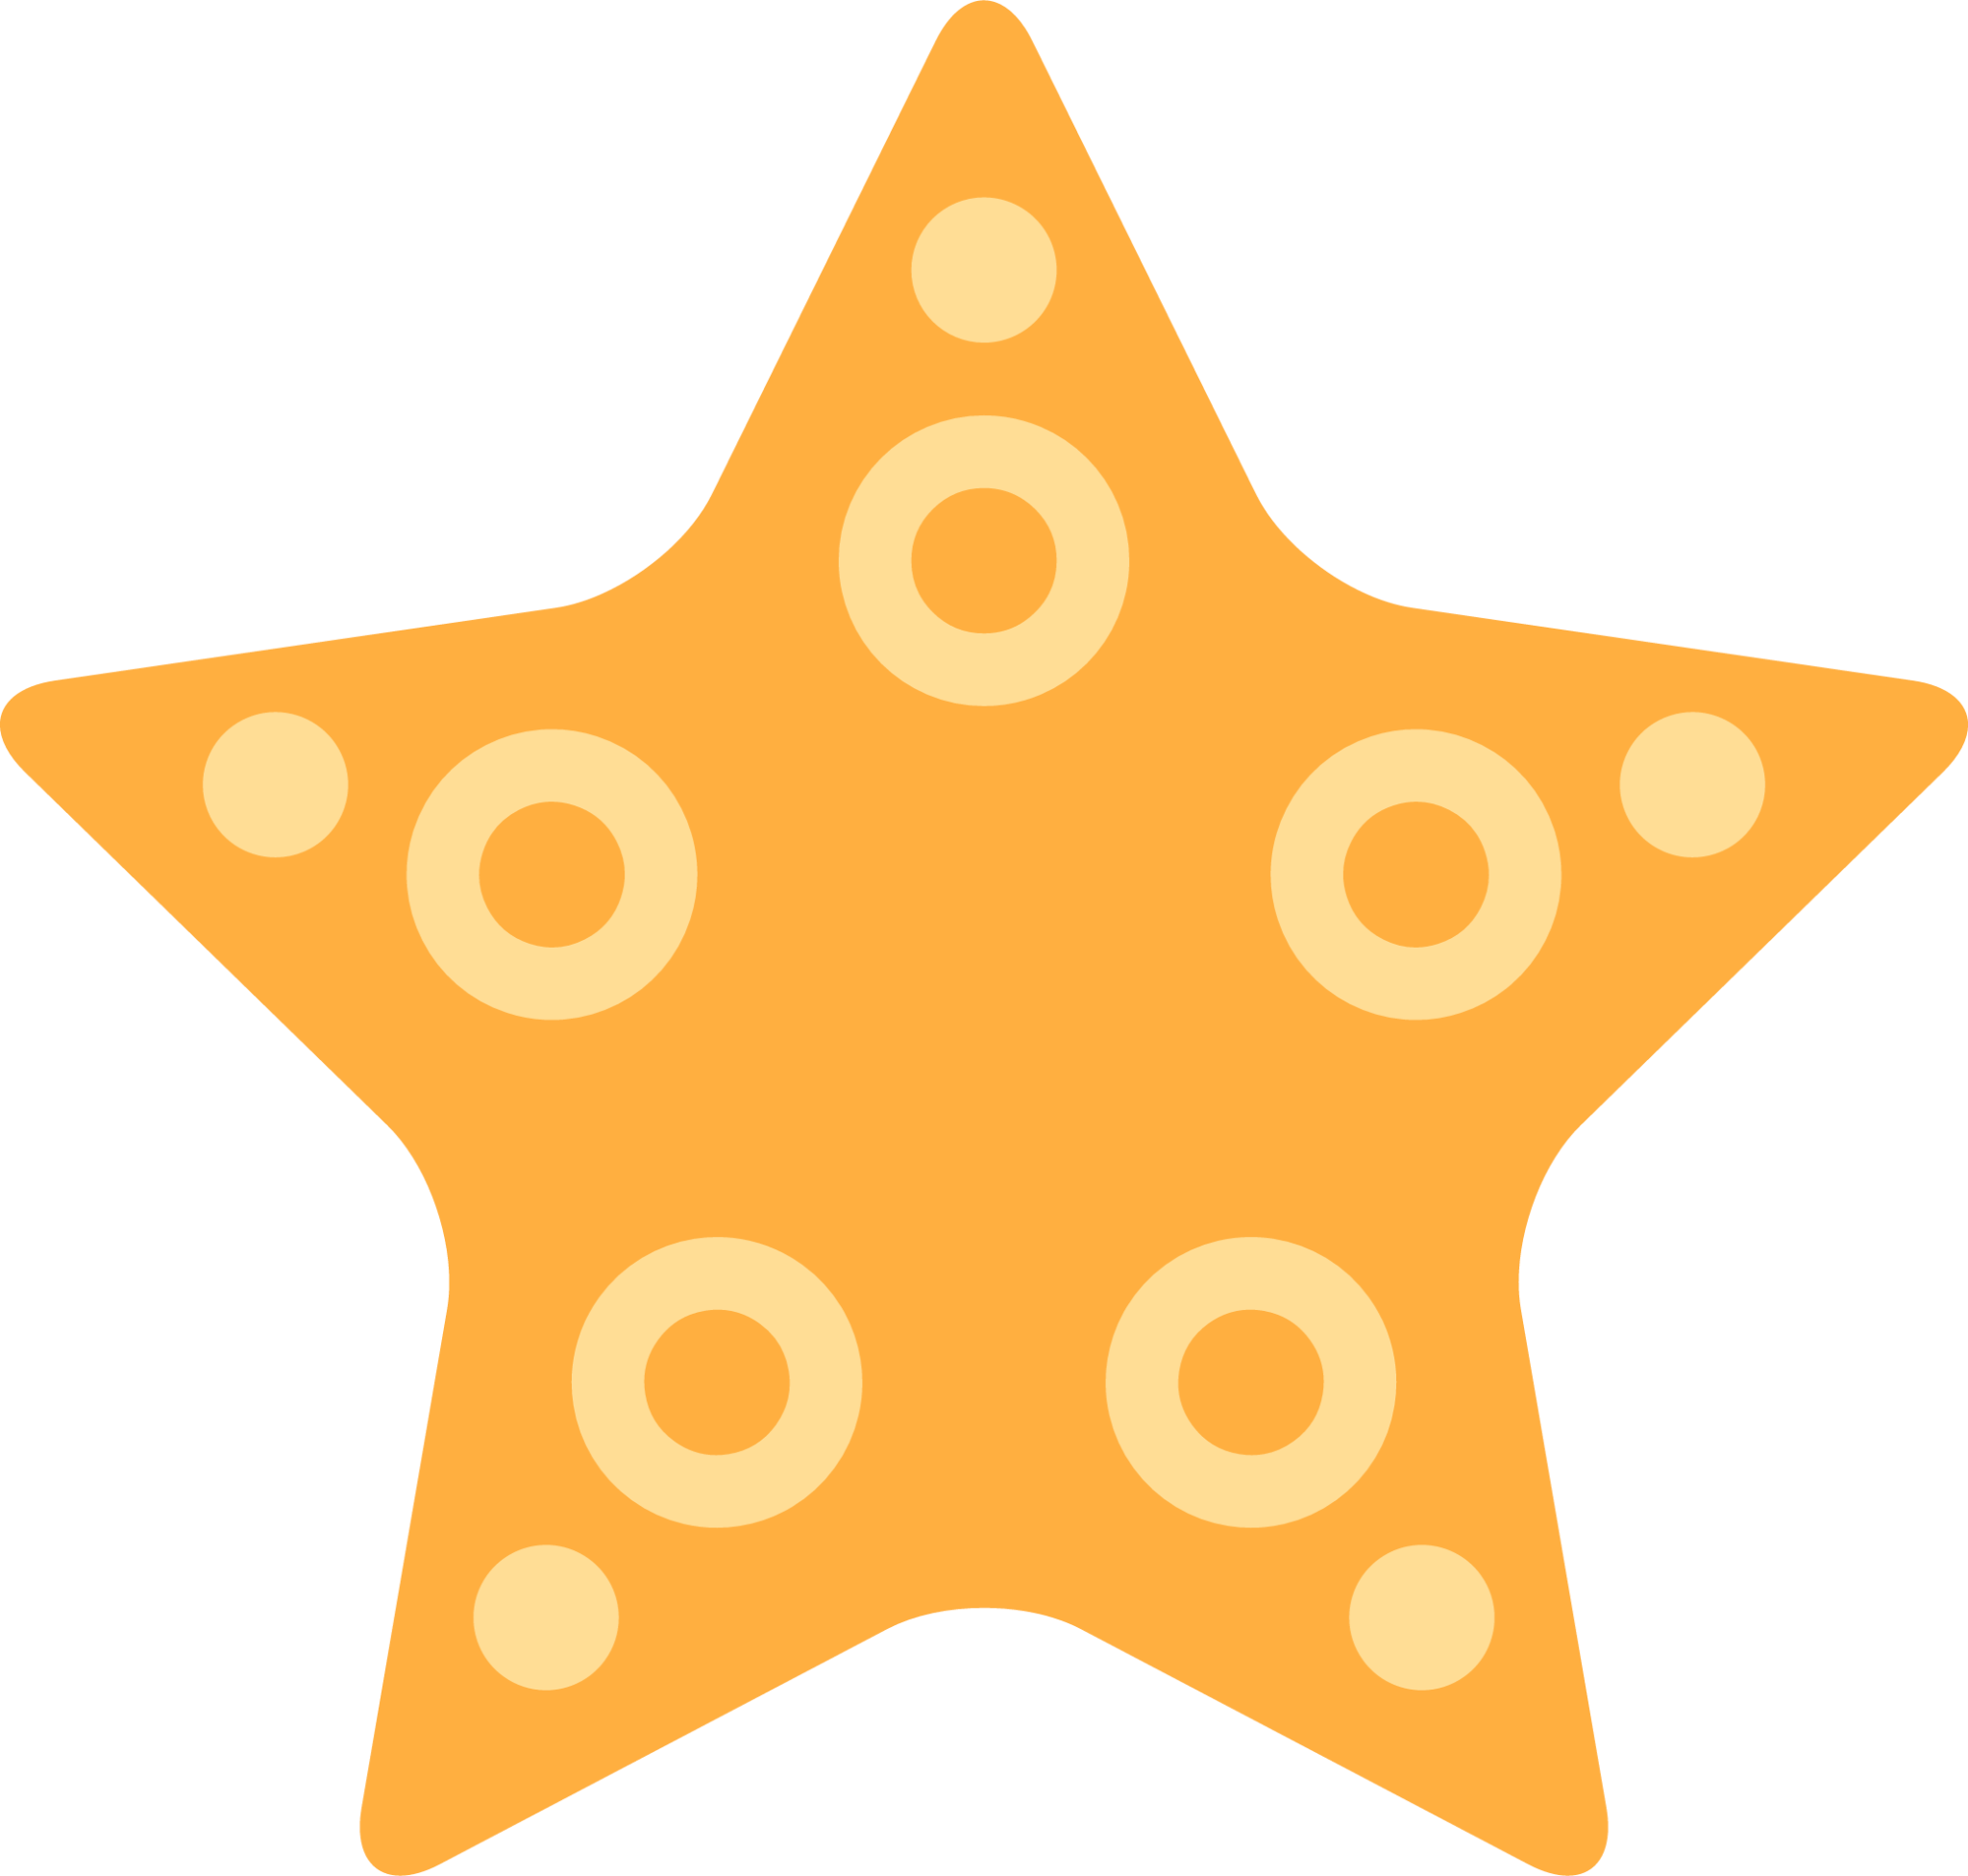 sea star icon